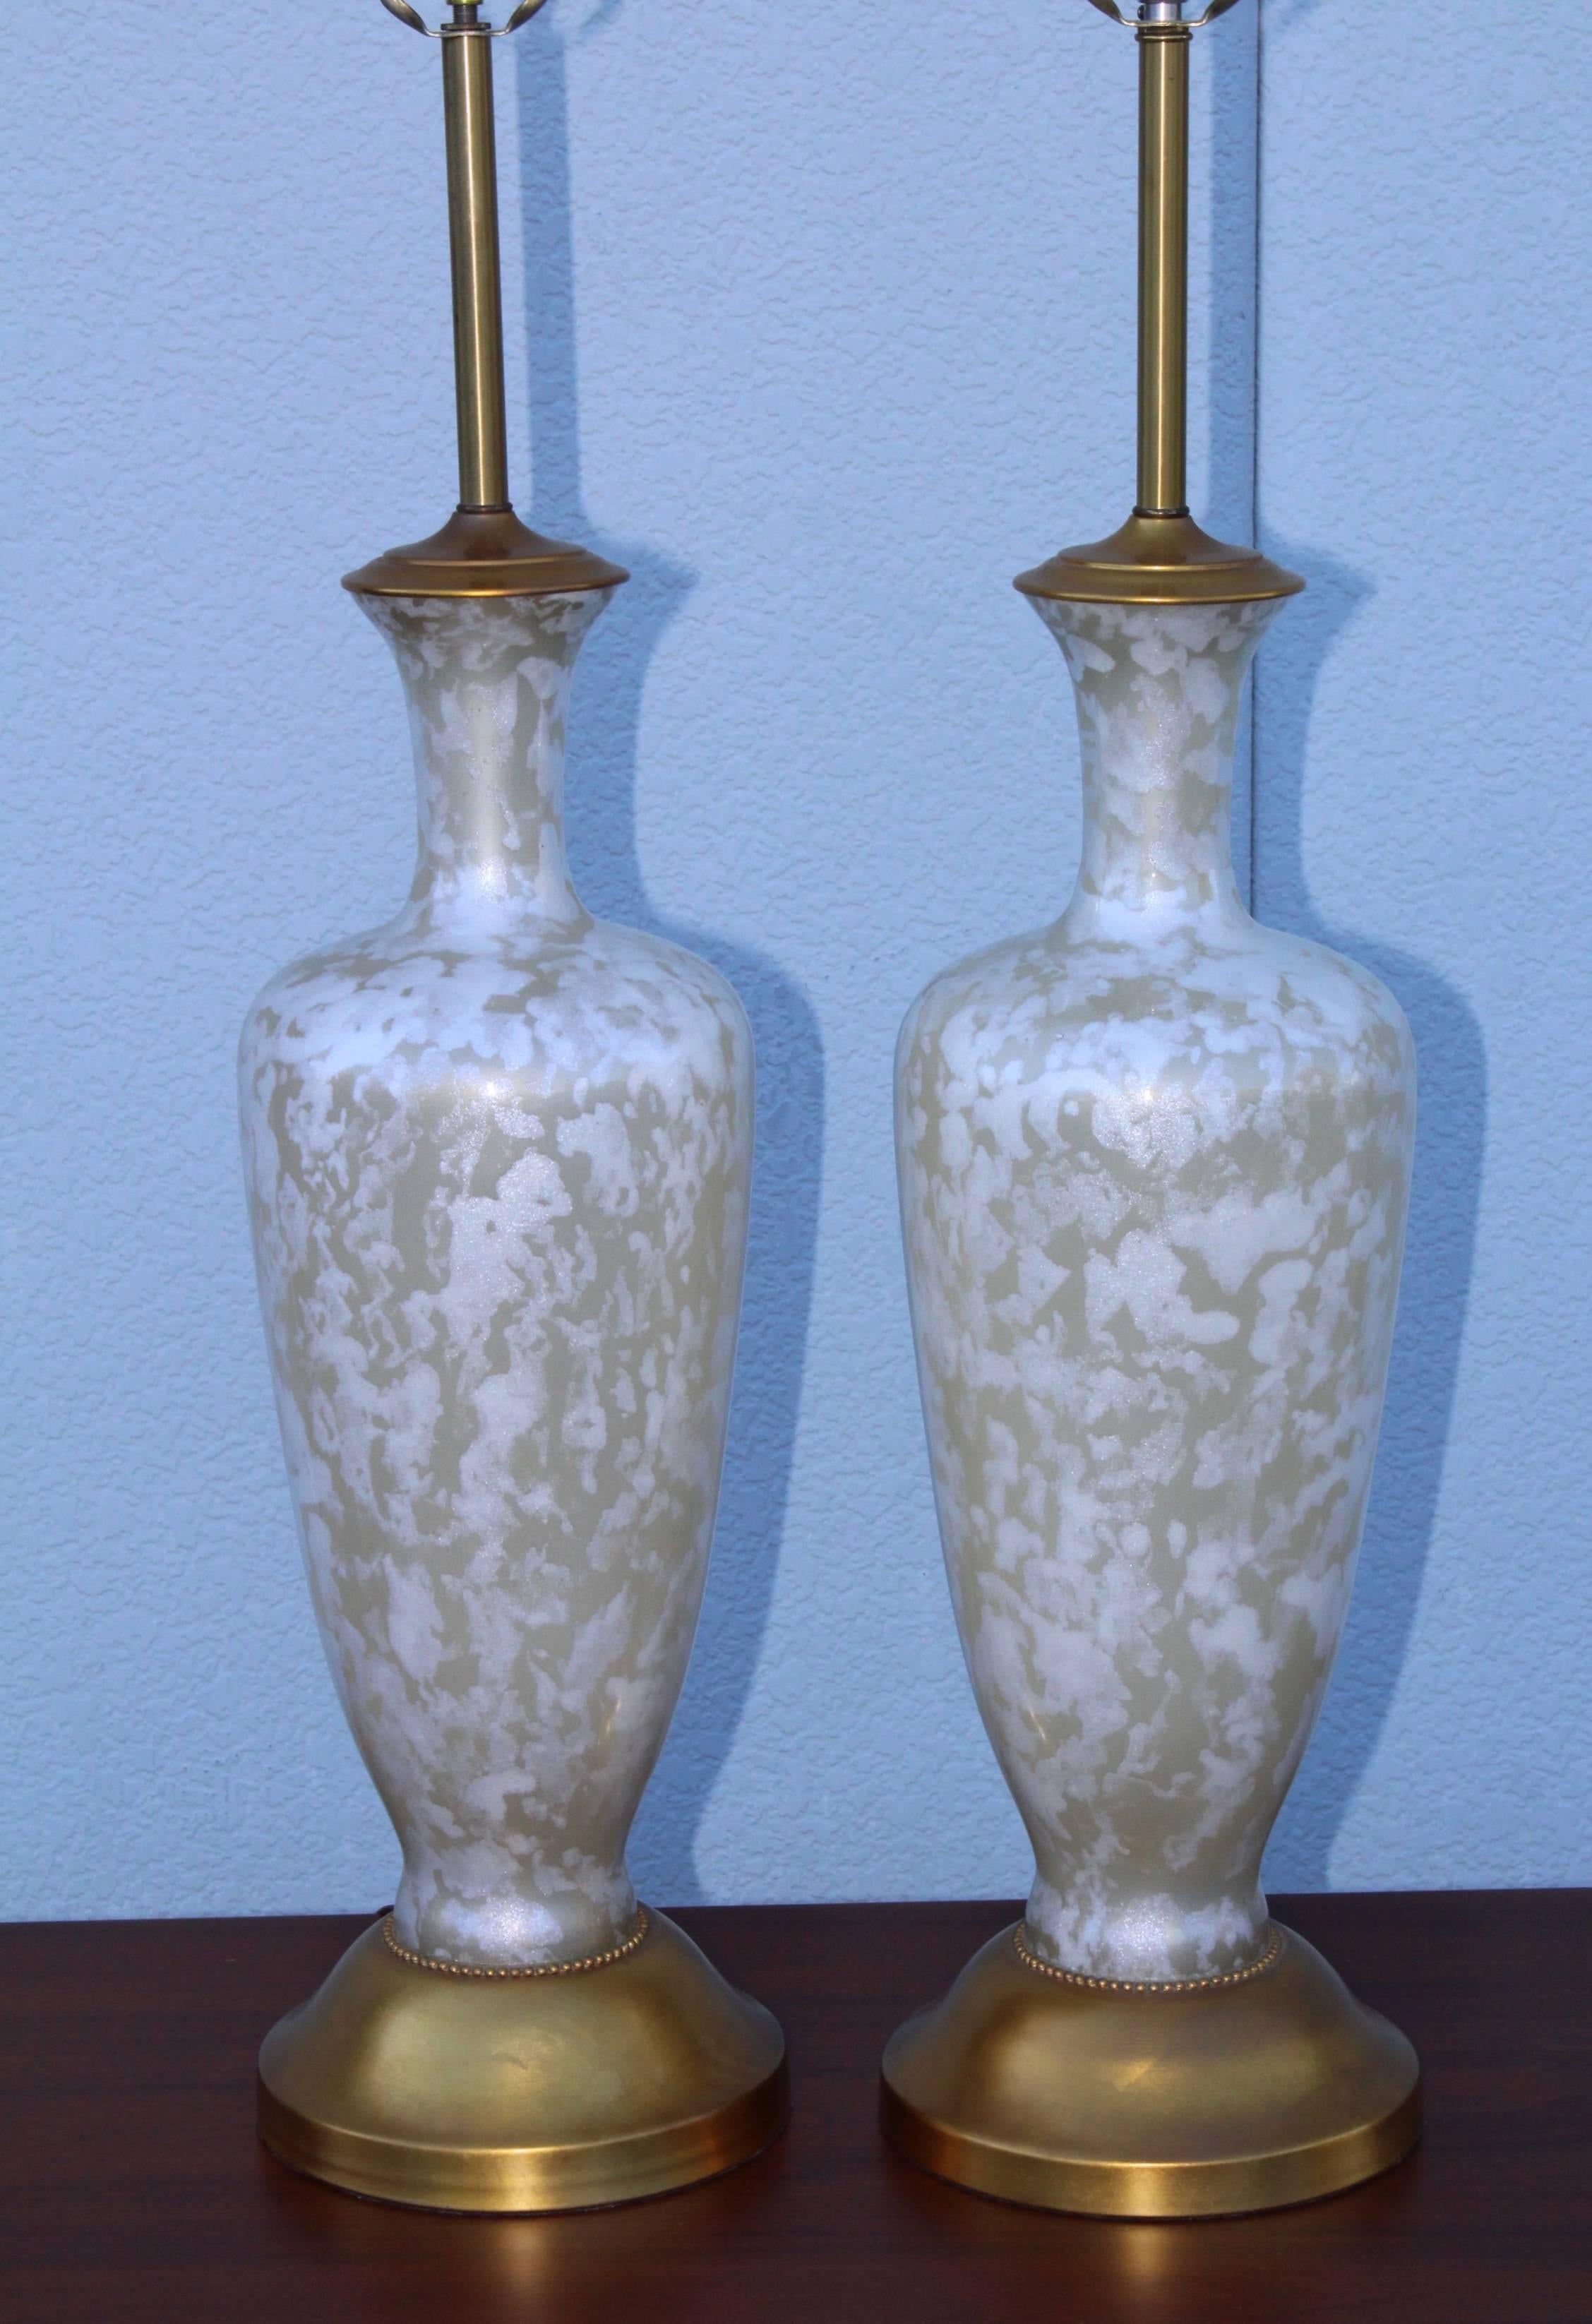 Superbe paire de grandes lampes de table en verre et feuilles d'or des années 1950, attribuées à The Mrbro lamp Company.

Hauteur jusqu'à la douille de la lumière 36